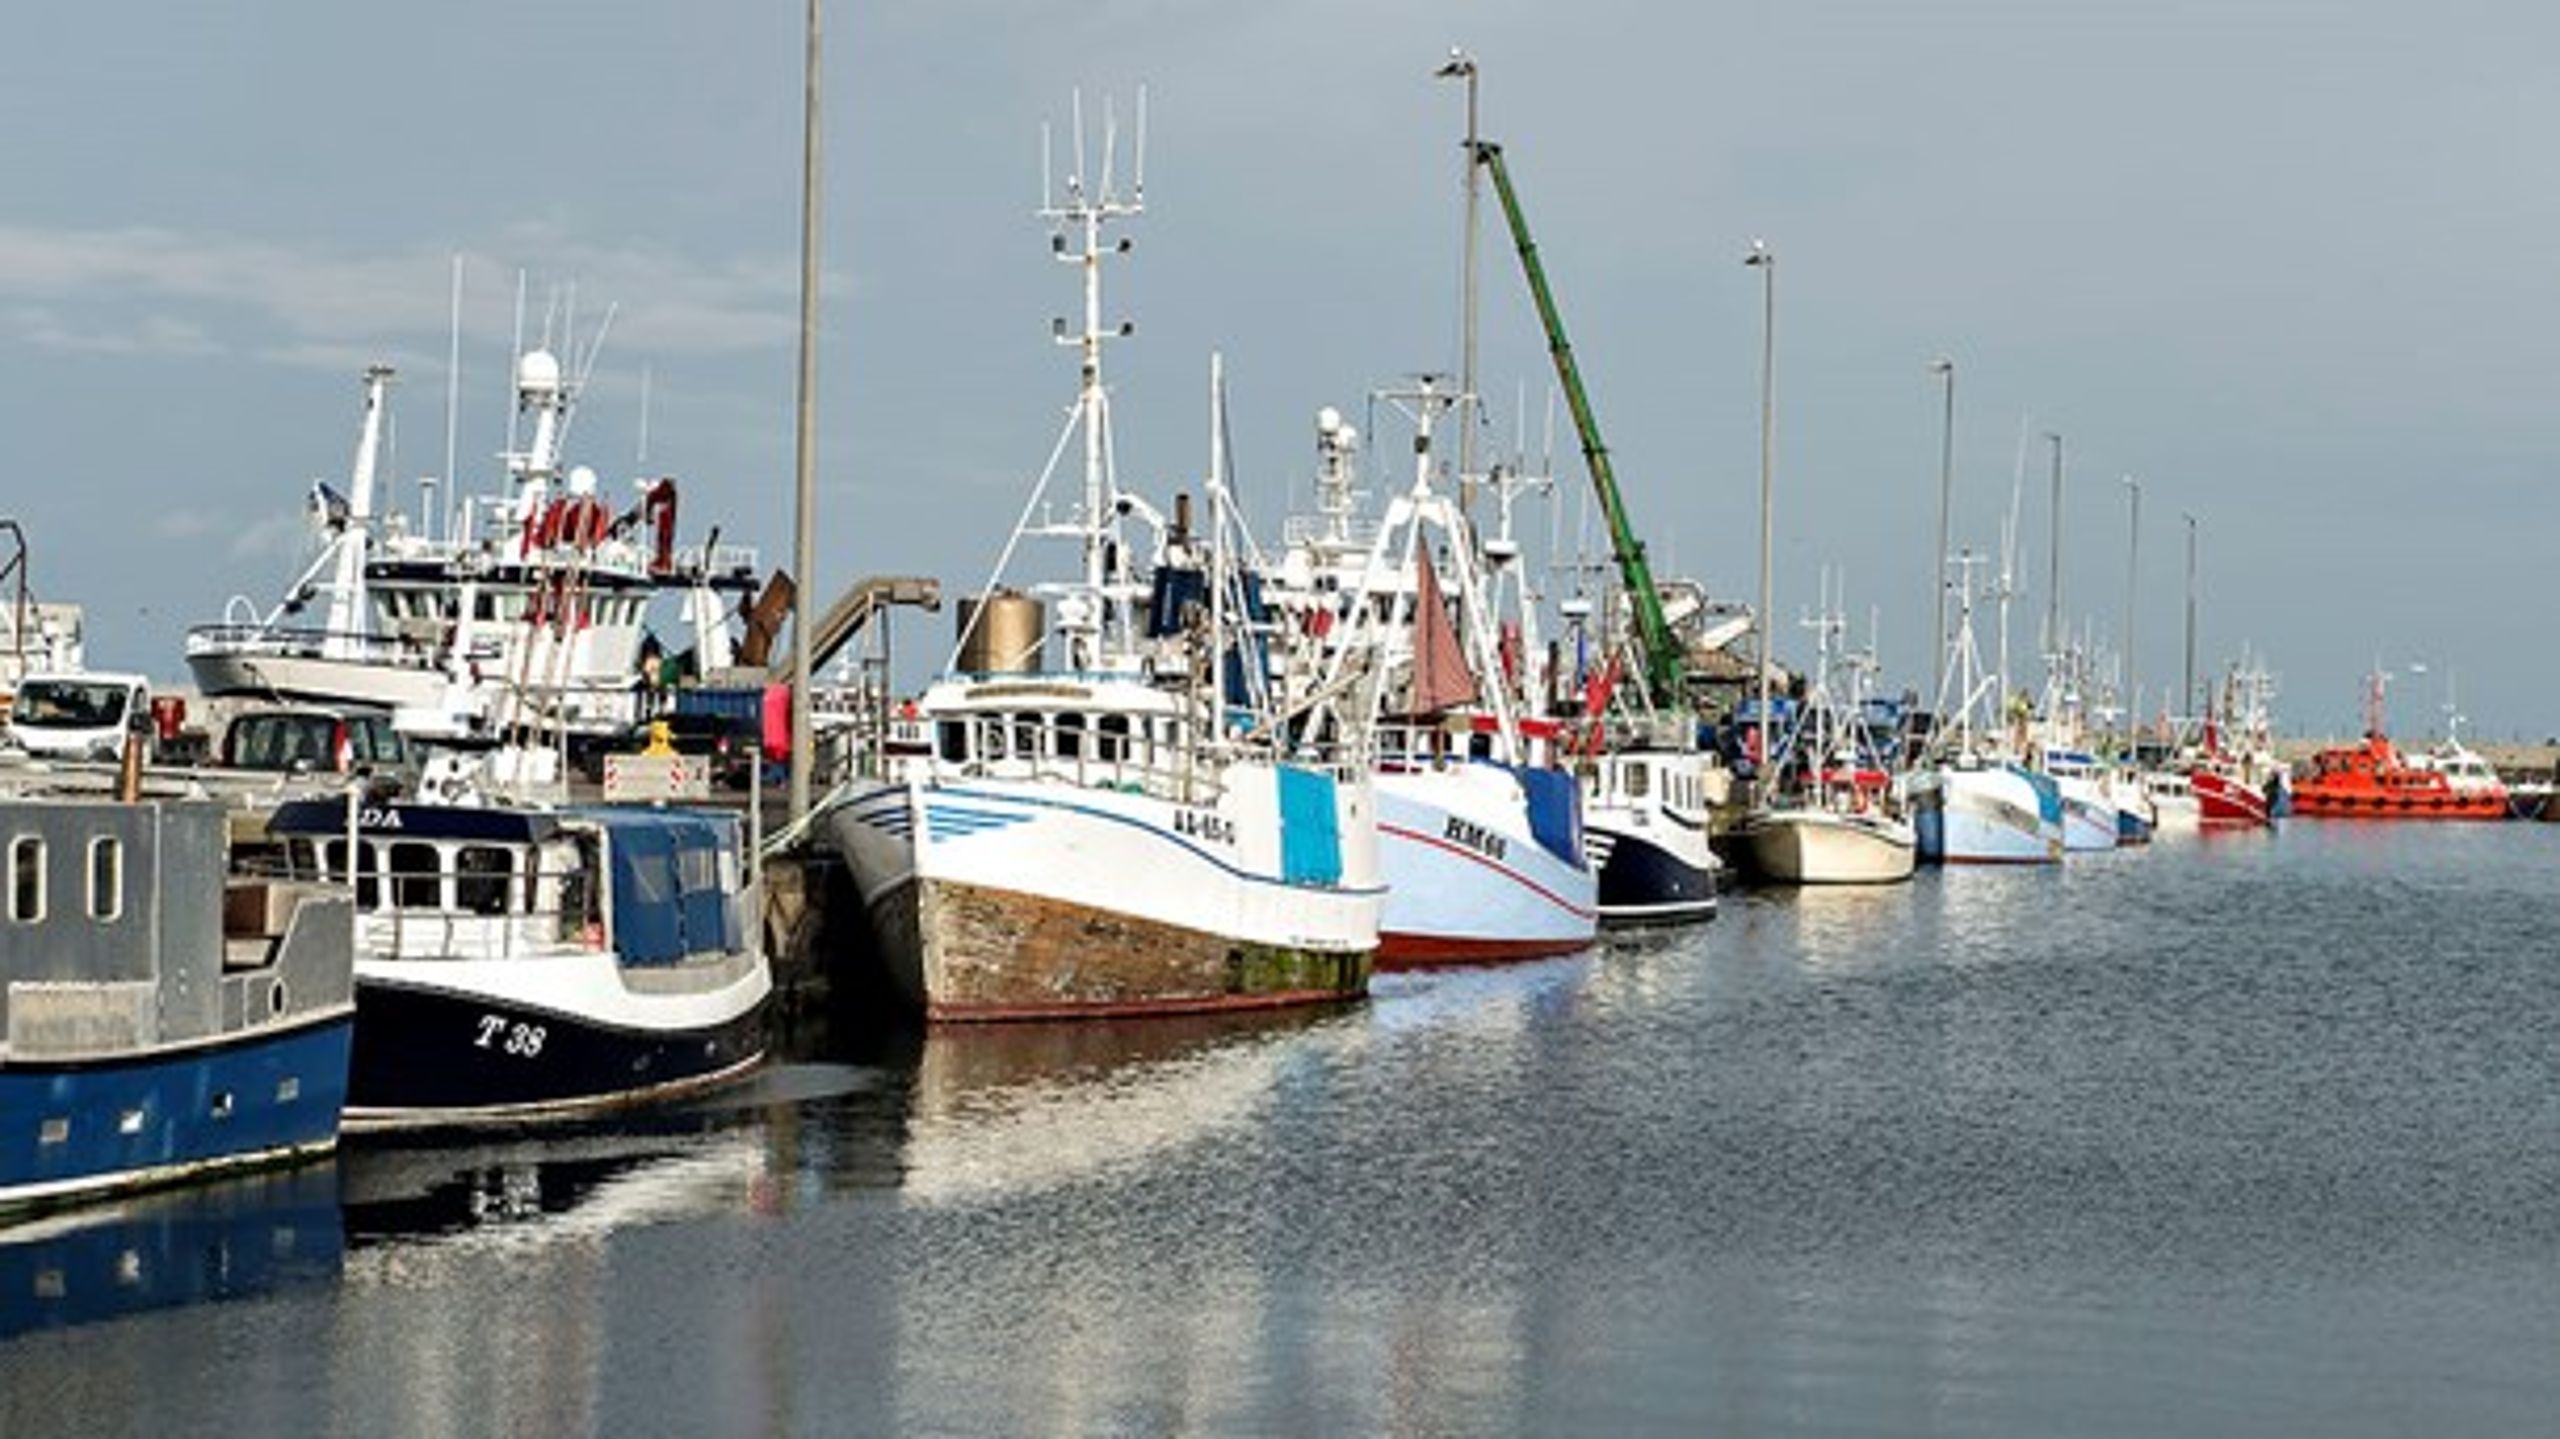 Det er desværre&nbsp;langt fra alle fiskere, der overholder forbuddet mod trawlfiskeri i Øresund, skriver&nbsp;Magnus Eckeskog fra Greenpeace.<br>